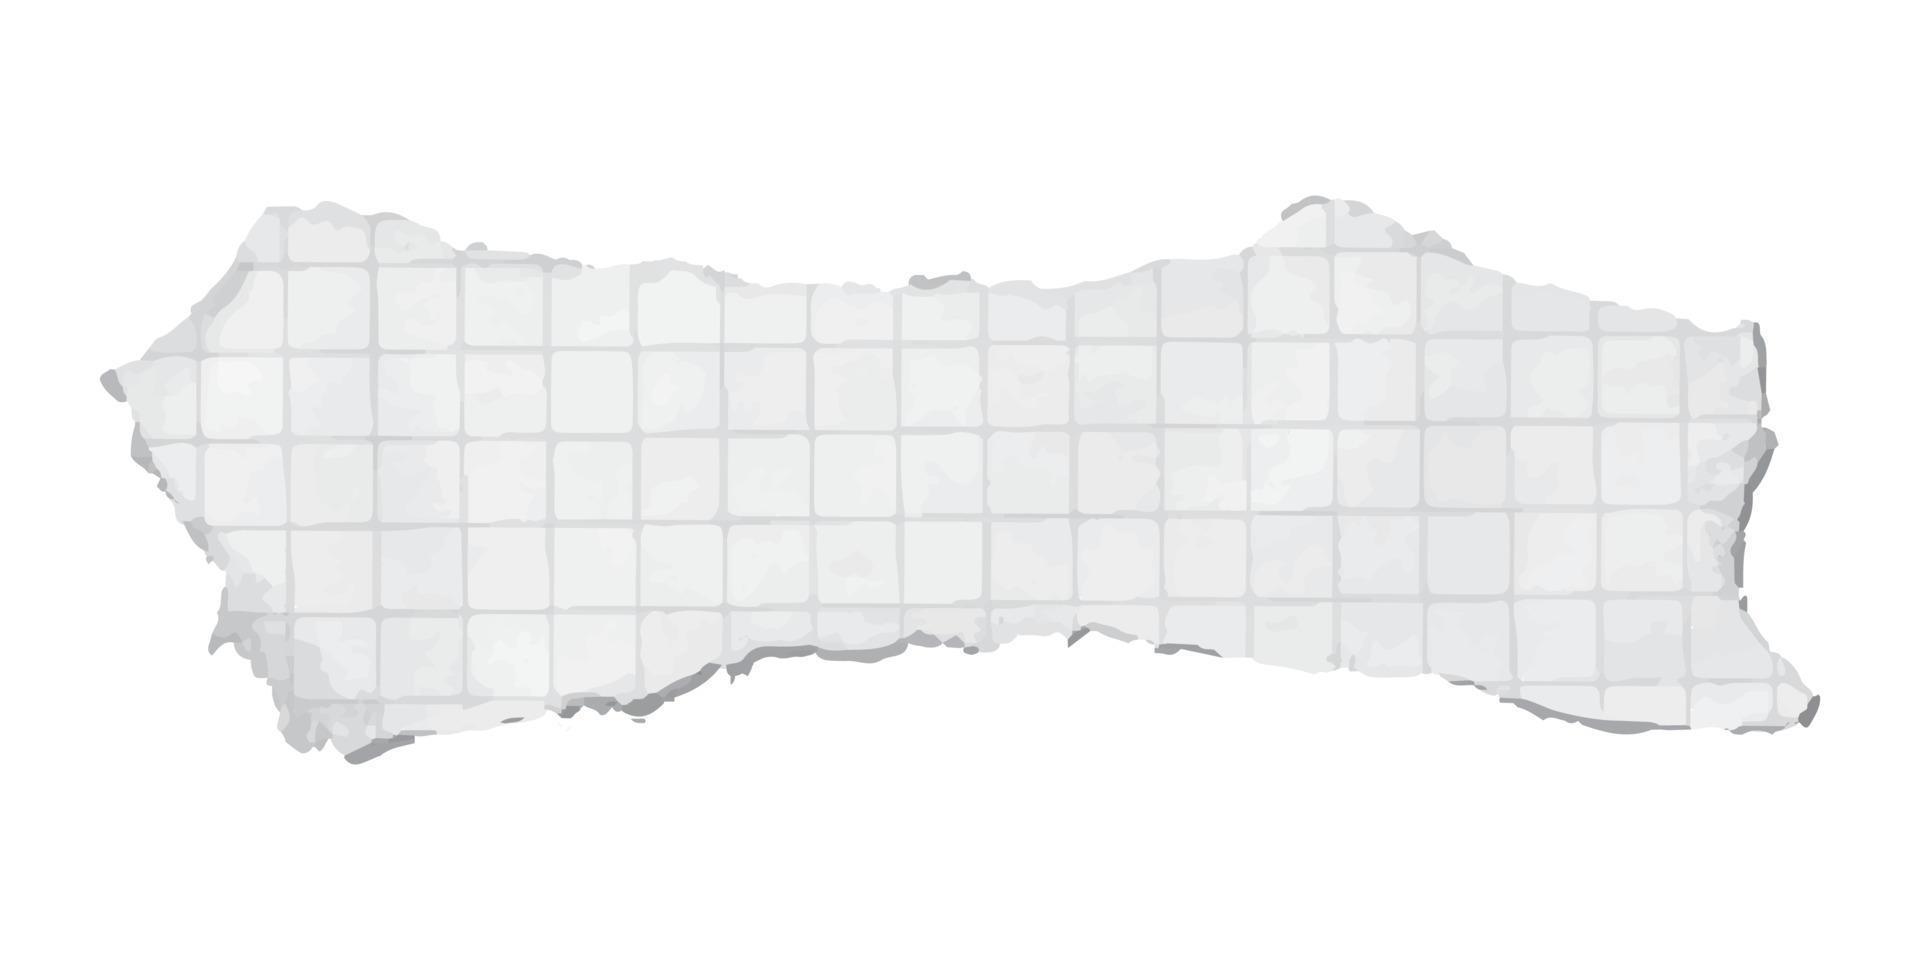 vectorillustratie van gescheurde stukjes papier. grafische textuur achtergrond voor ontwerp. vector